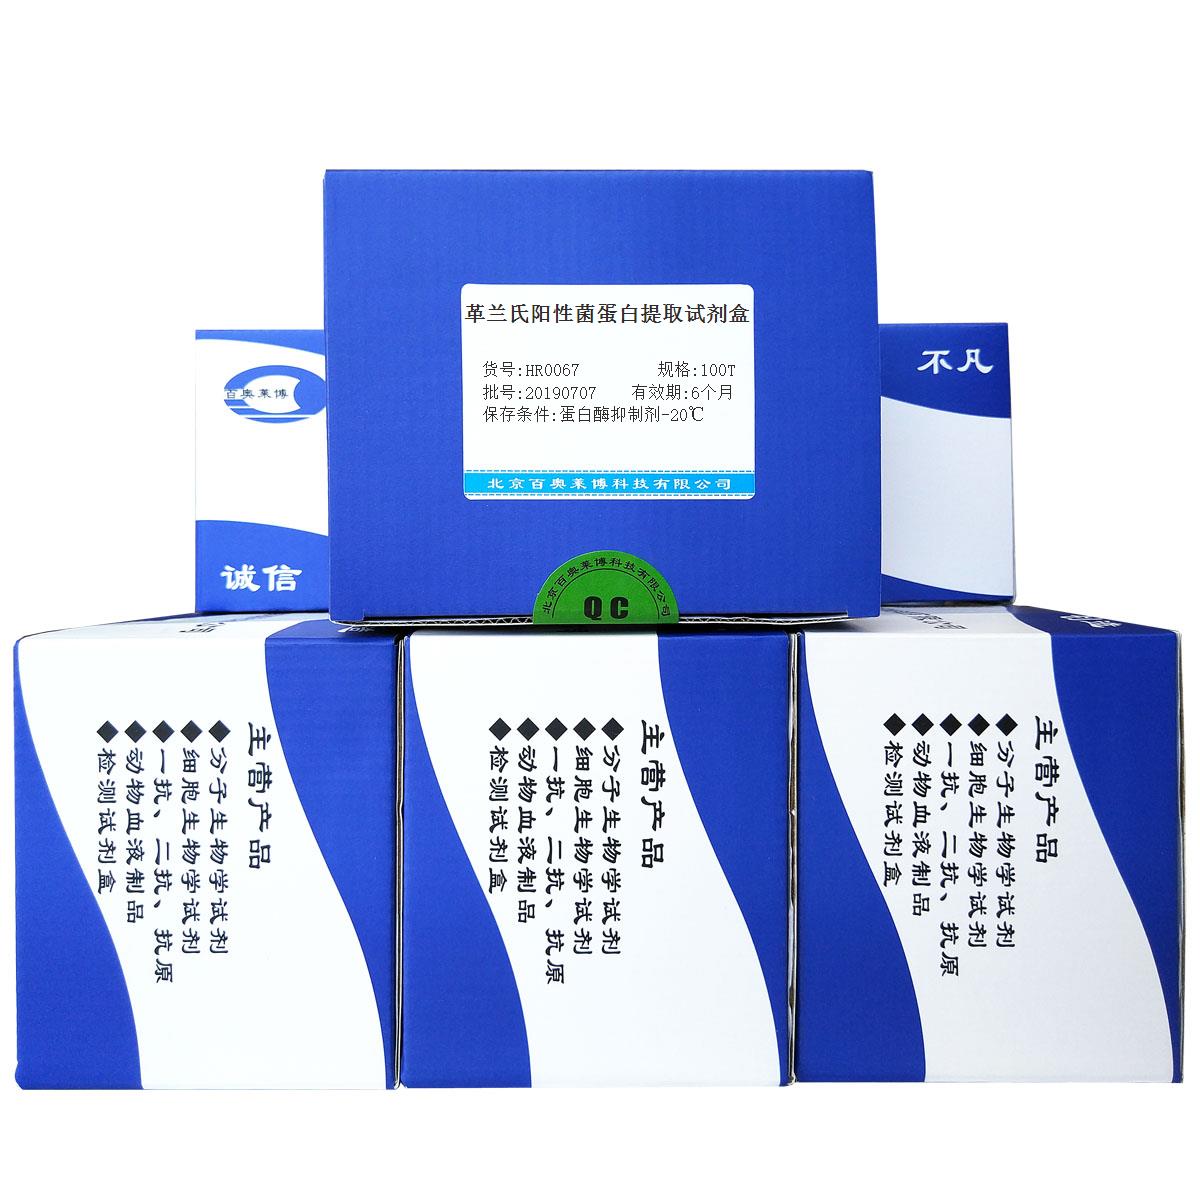 革兰氏阳性菌蛋白提取试剂盒北京供应商